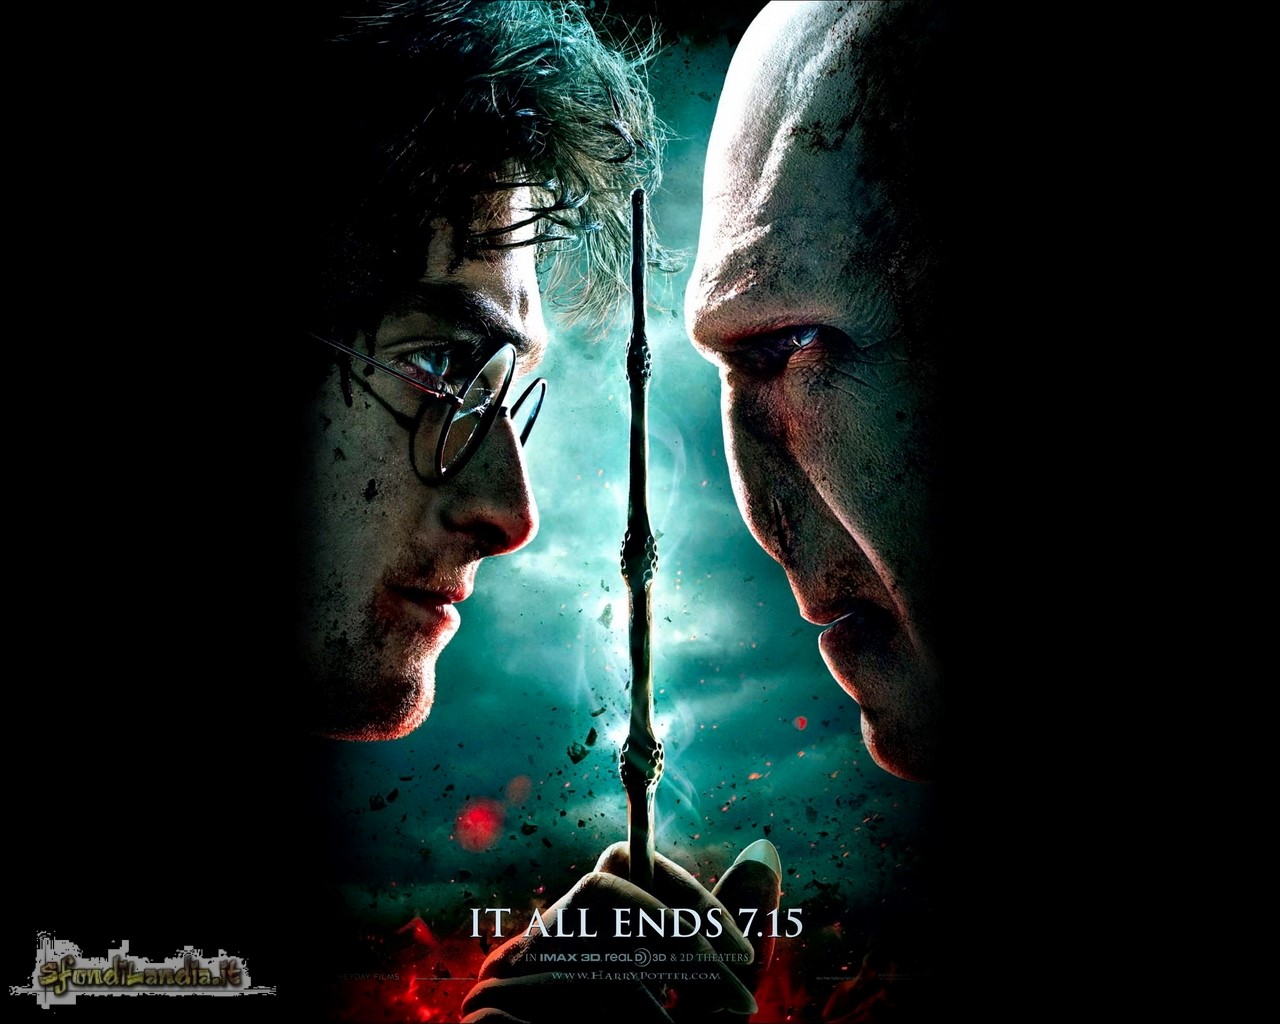 Versus Voldemort